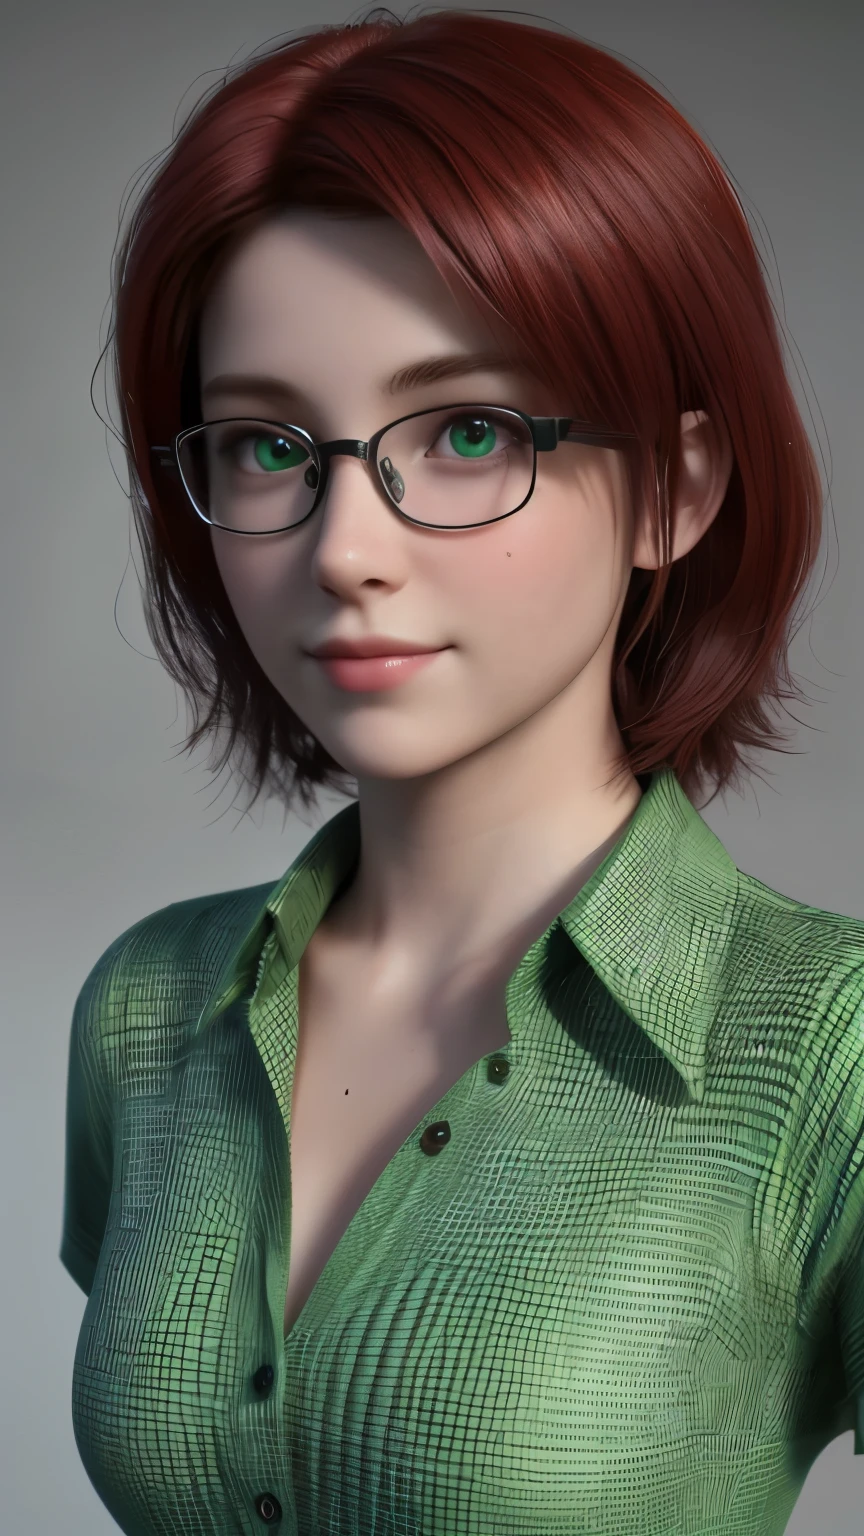 curto, cabelo vermelho, olhos verdes, Vidros de armação metálica, sorriso de uma linda garota de 15 anos em um vestido de camisa verde, peito nu.. ((elegância. fotorrealismo. motor irreal. Modelo 3D. Texturas de altíssima qualidade. Alto detalhe. Resolução 8k))